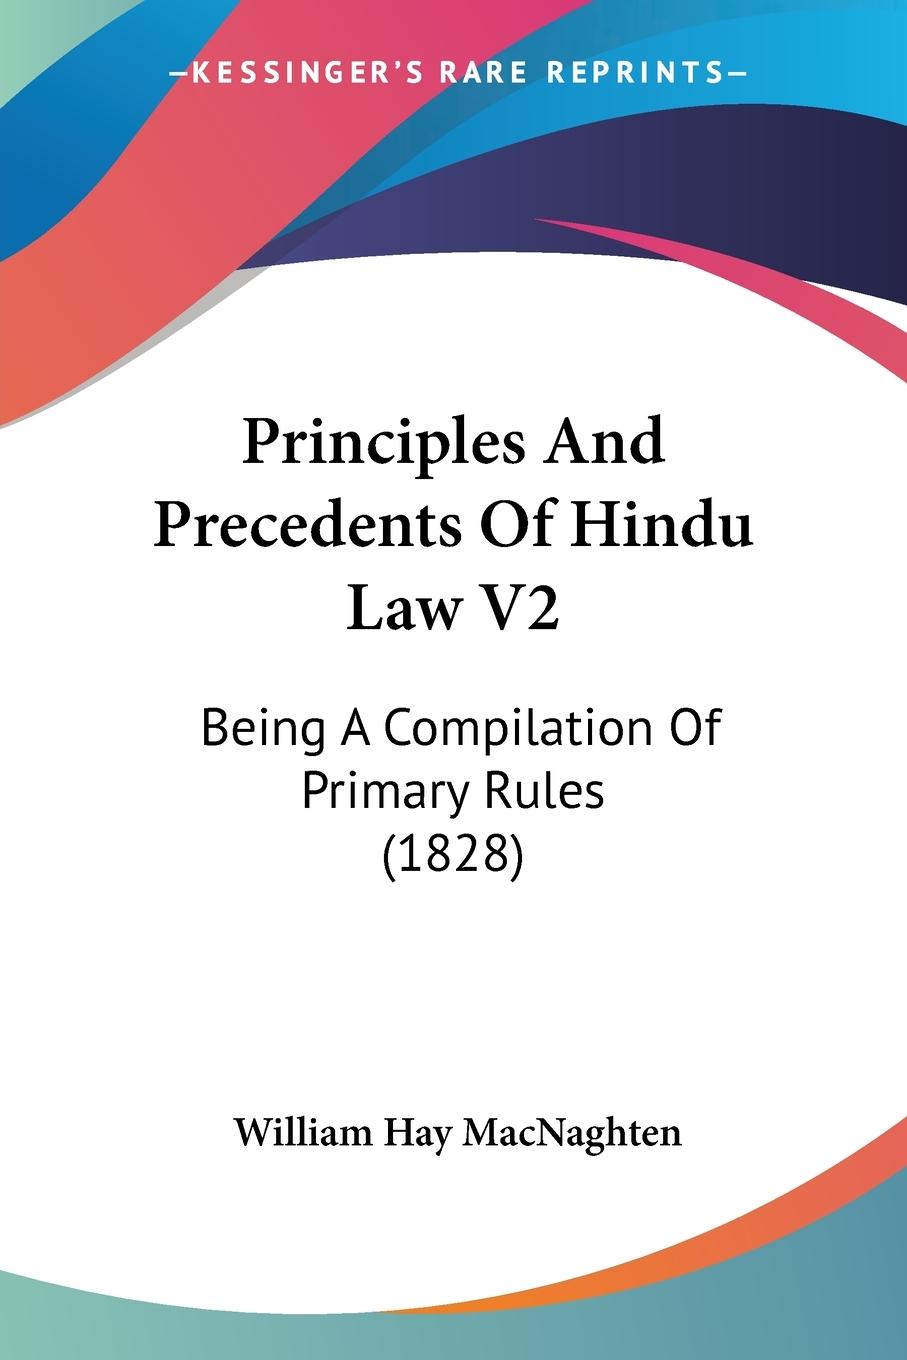 Principles And Precedents Of Hindu Law V2 - Macnaghten, William Hay